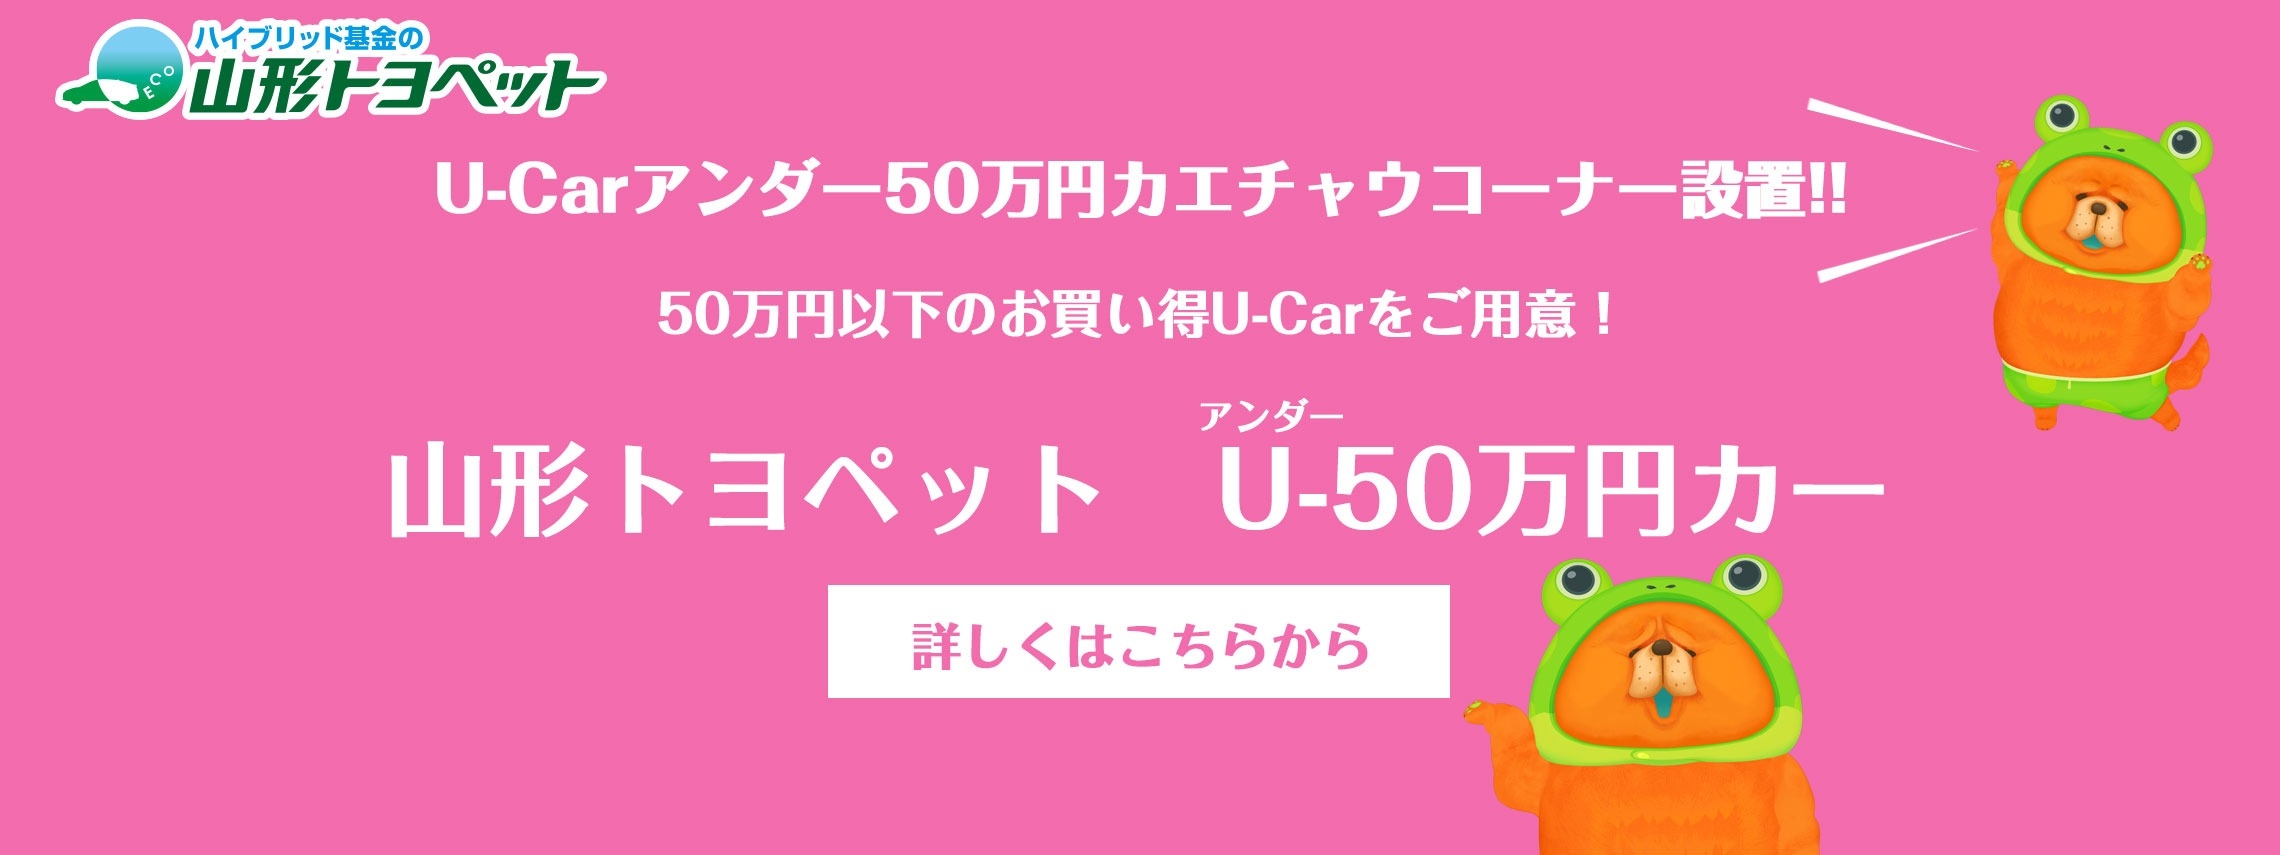 U-Carアンダー50万円カエチャウコーナー